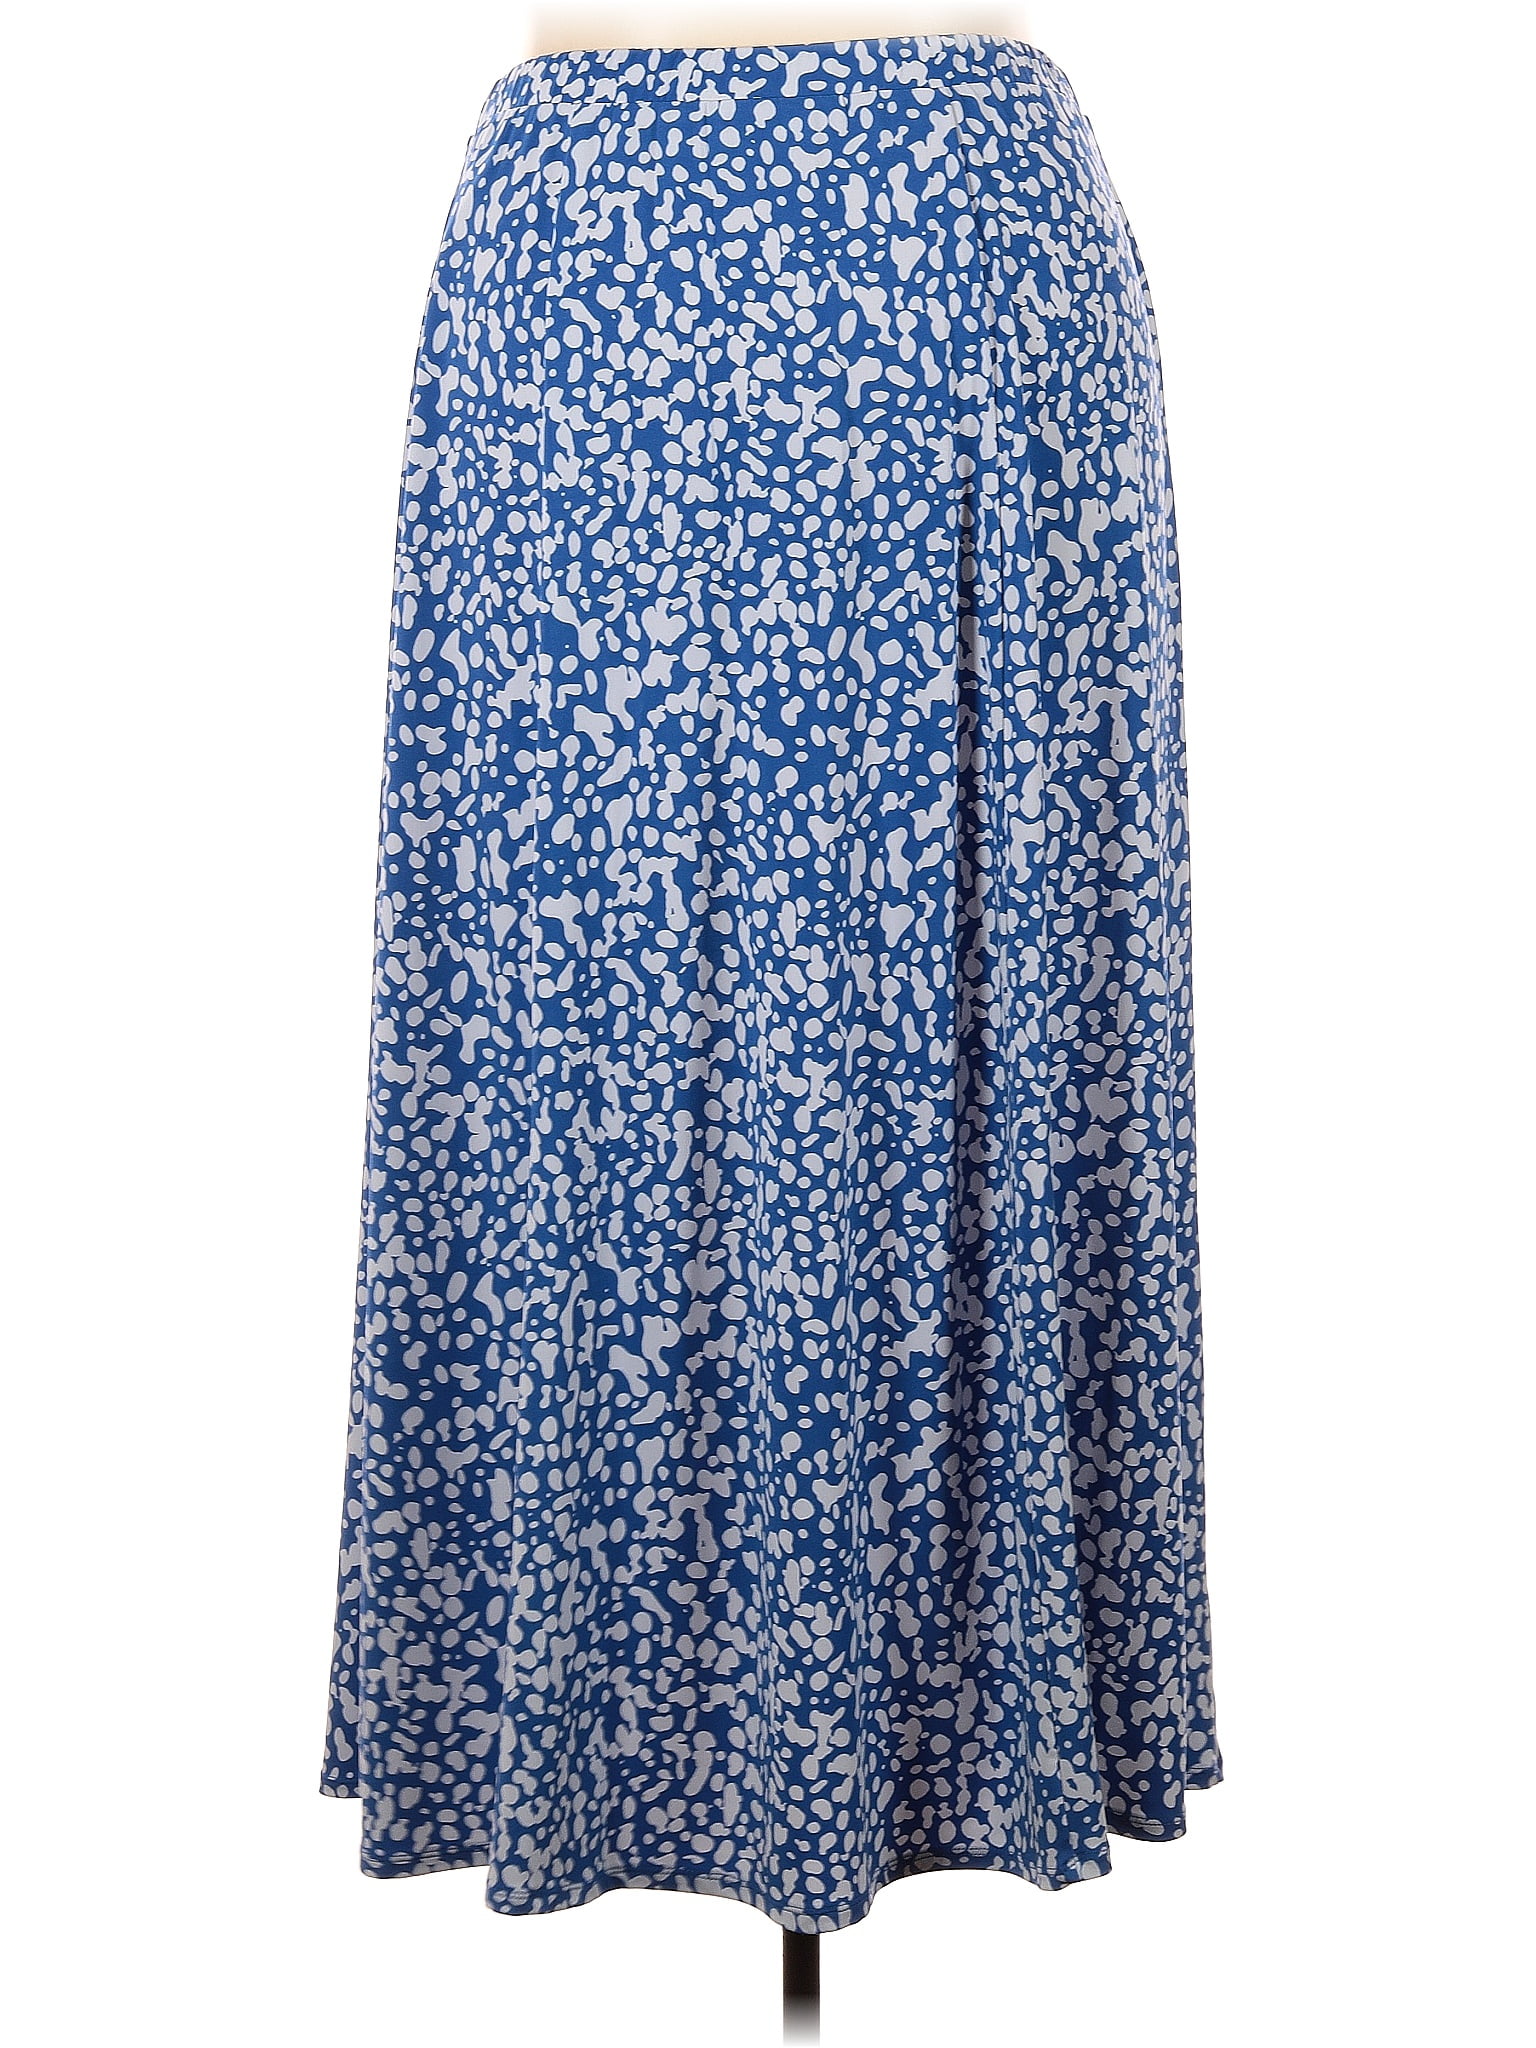 Susan Graver Multi Color Blue Casual Skirt Size 2X (Plus) - 62